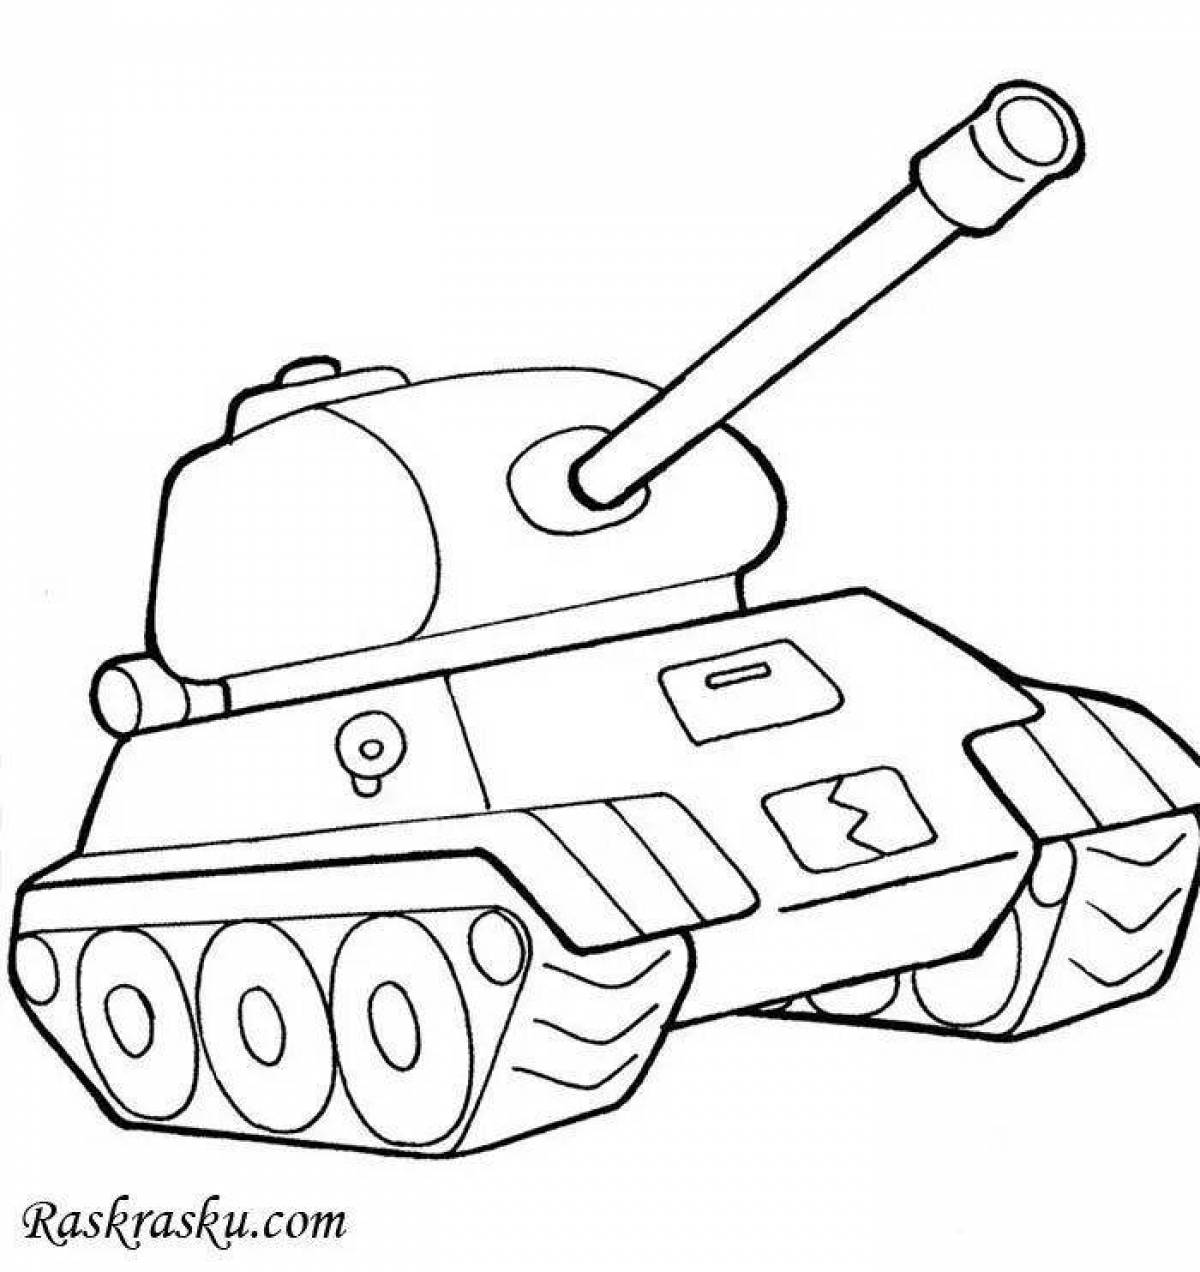 Раскраска танк для детей 4 5. Раскраска танк т34 Военная техника. Раскраска танк т 34. Раскраска военные танки т34. Раскраска танк т34 Военная техника для детей.